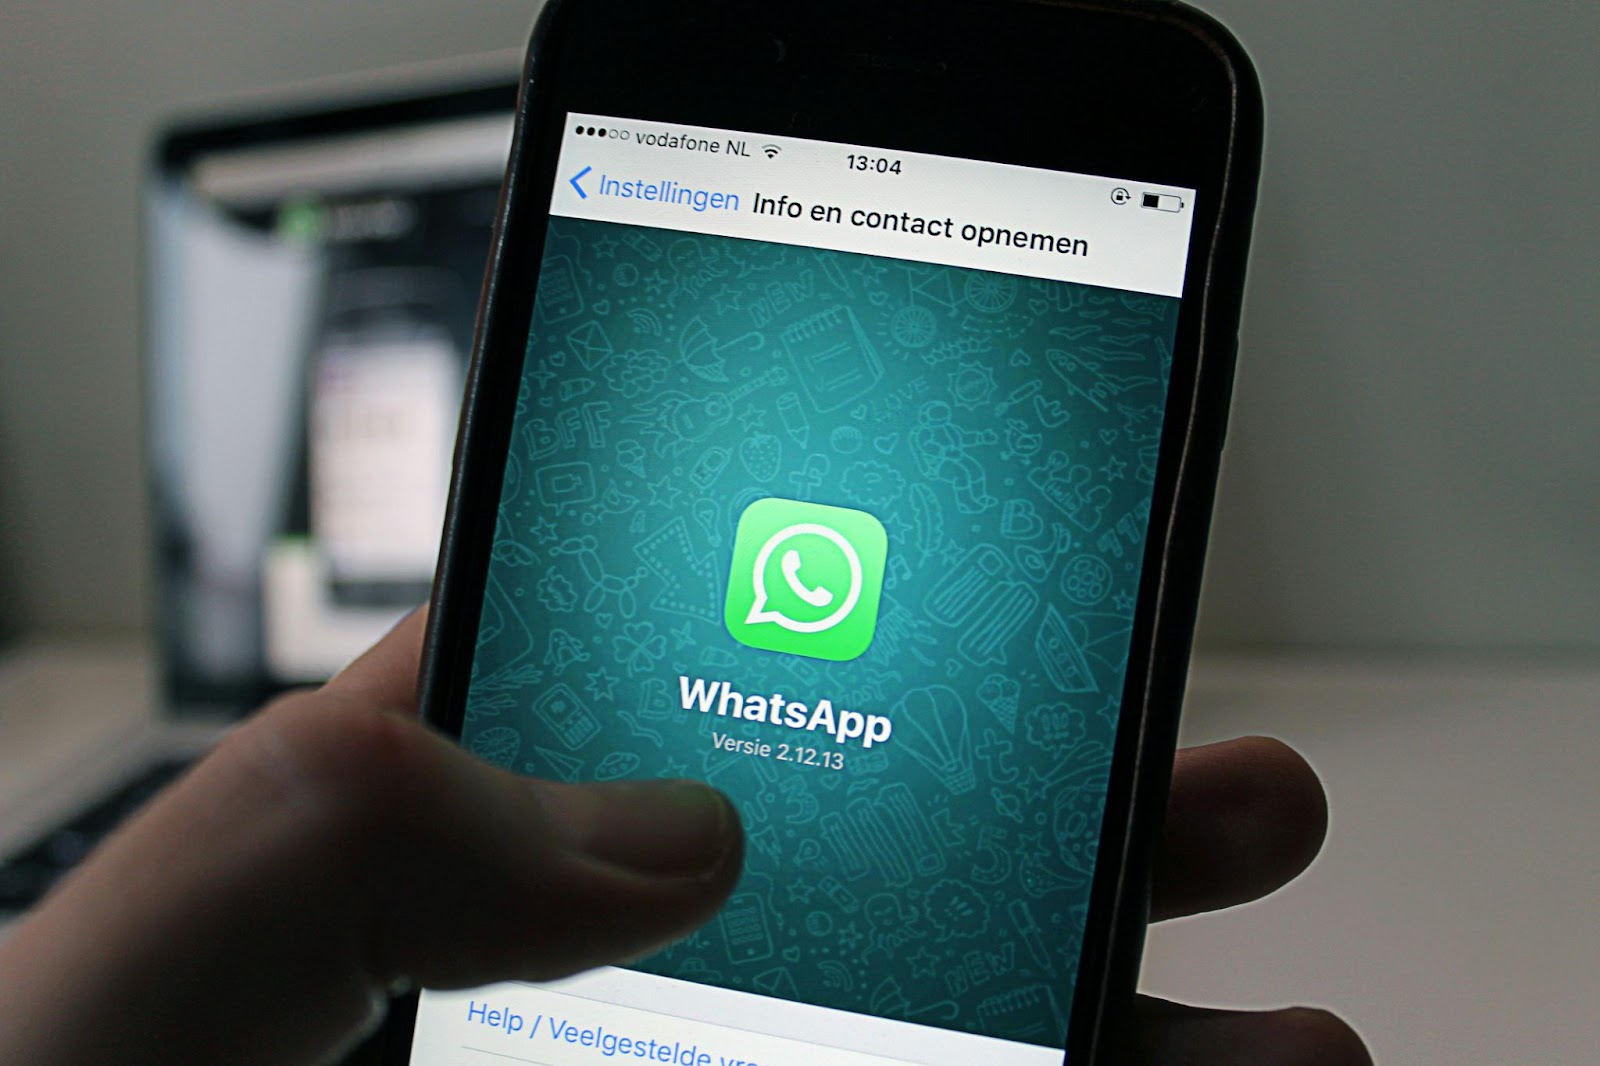 Una mano sosteniendo un teléfono móvil con la pantalla mostrando la aplicación WhatsApp abierta en la sección de información de contacto.